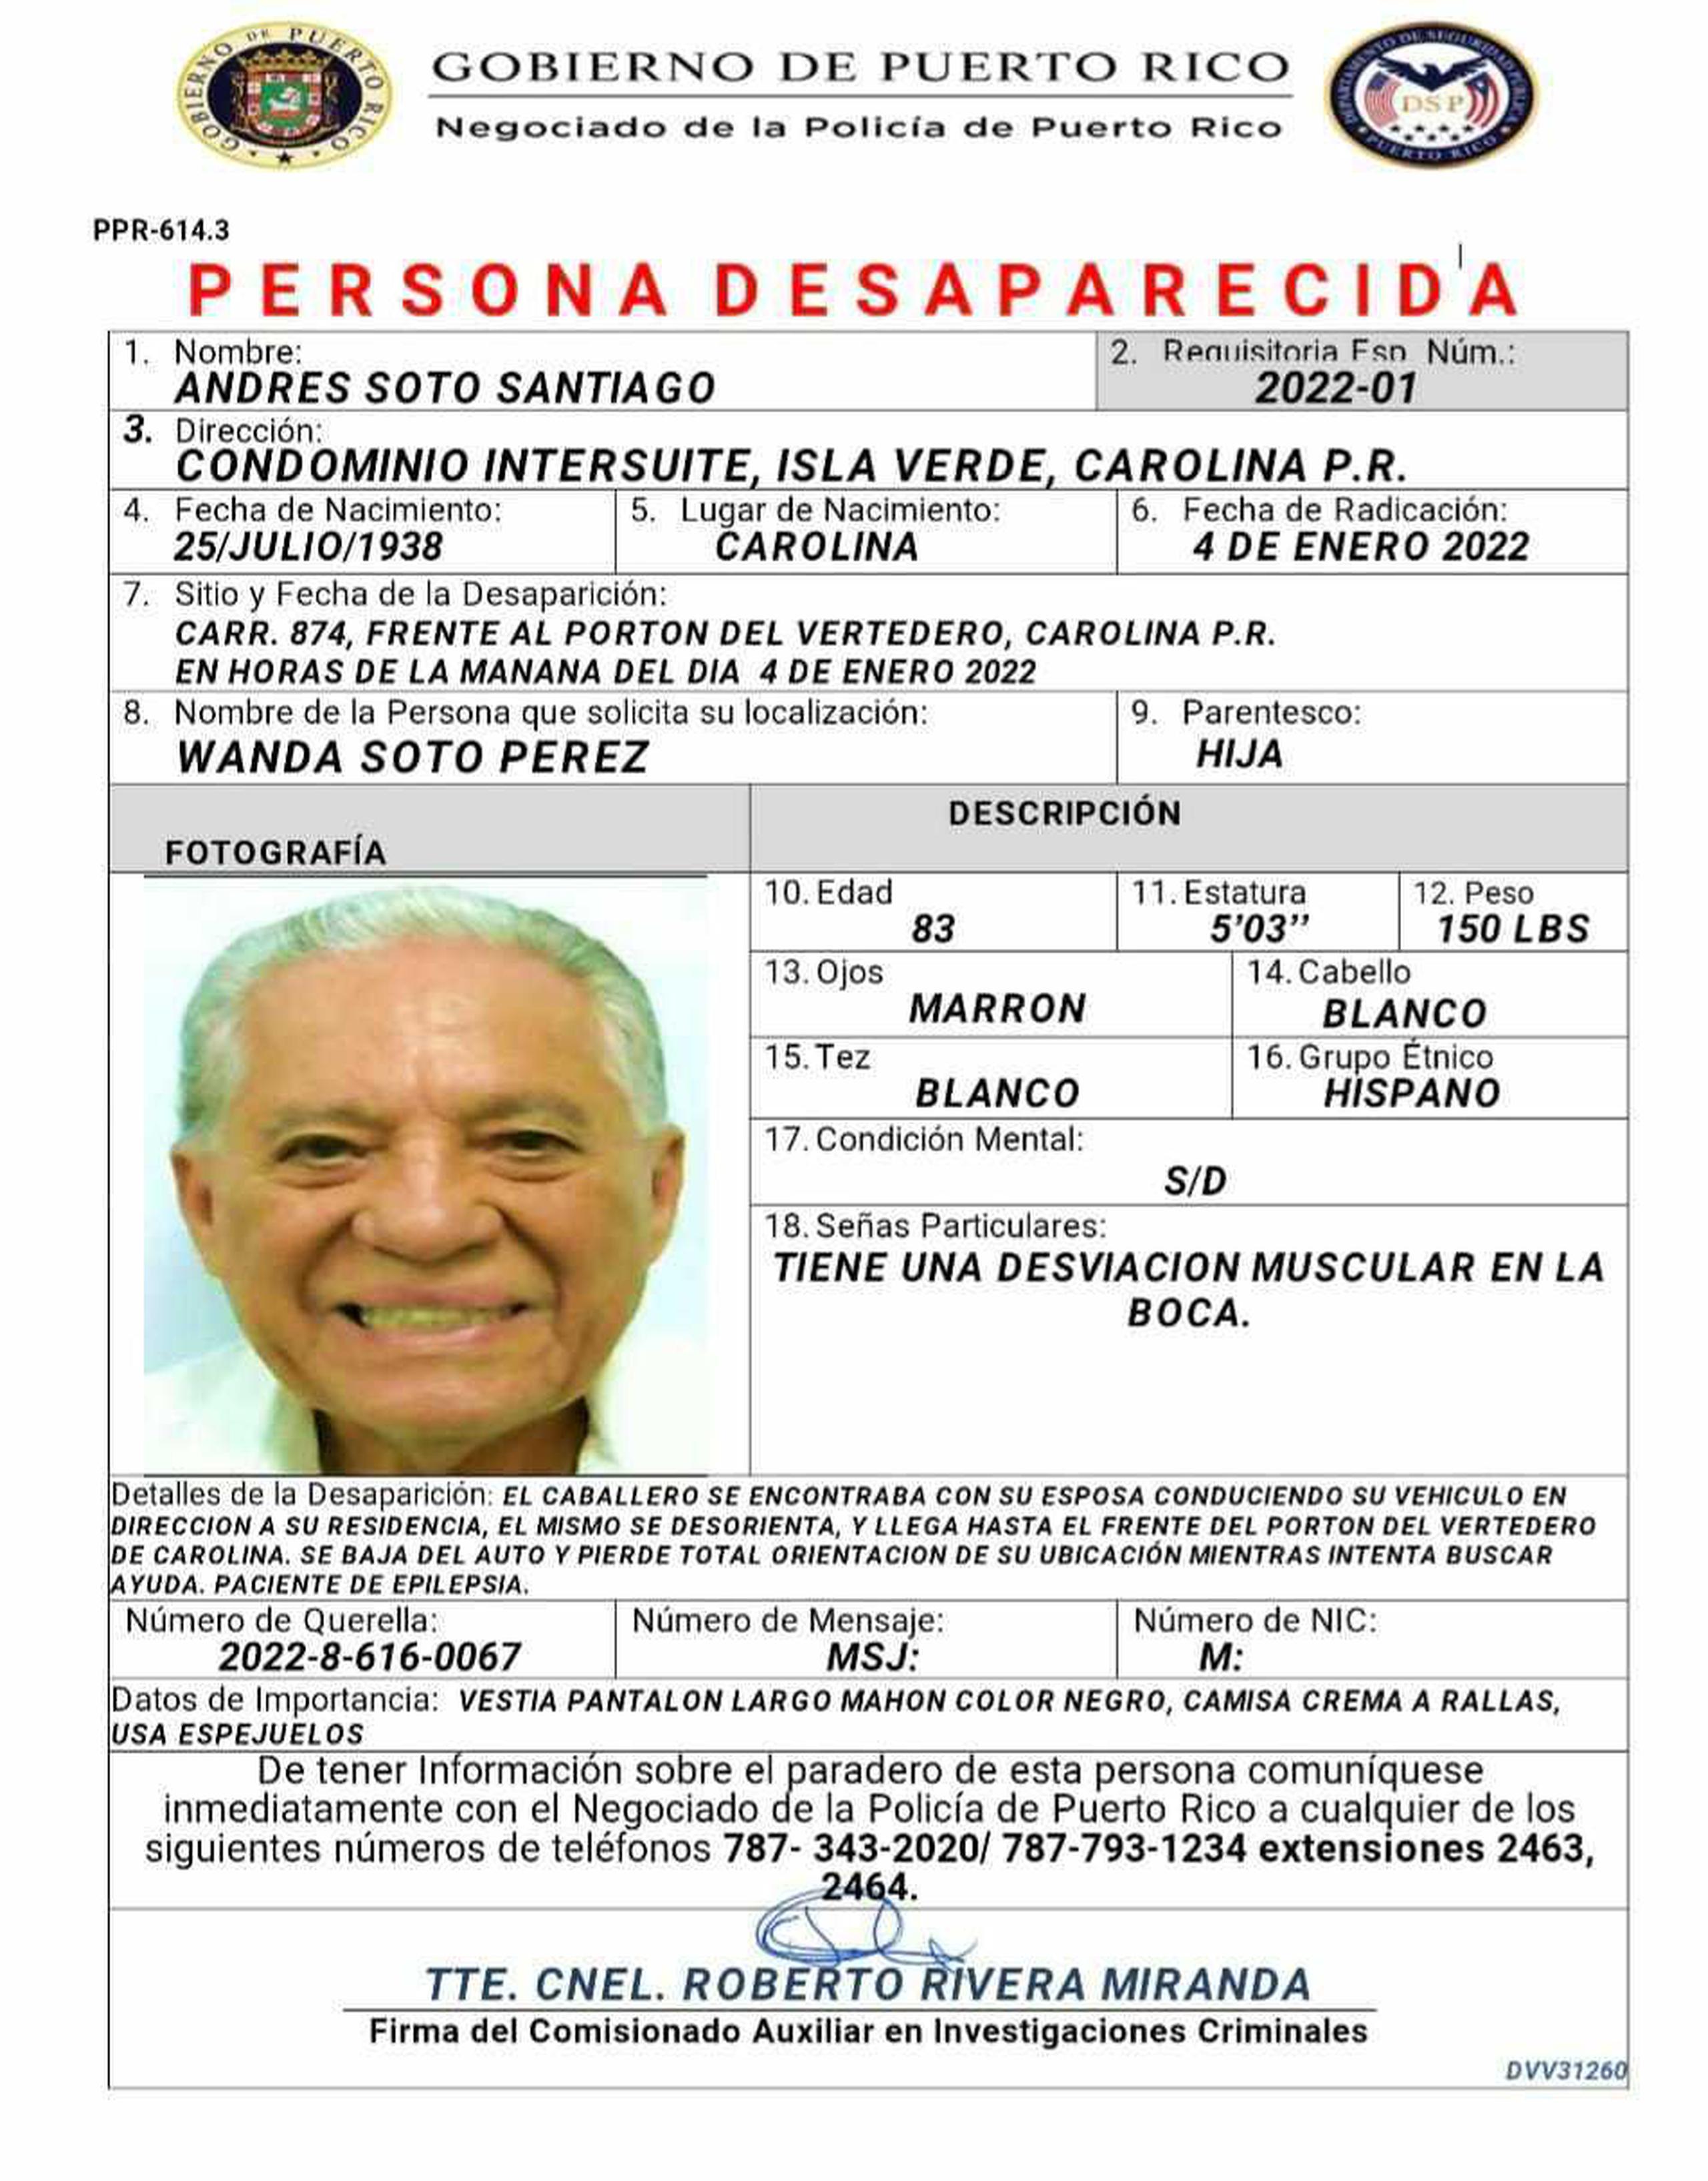 Reportan desaparecido residente de 82 años de Carolina. Andrés Soto Santiago fue visto por última vez en la carretera 874, frente al vertedero de Carolina.